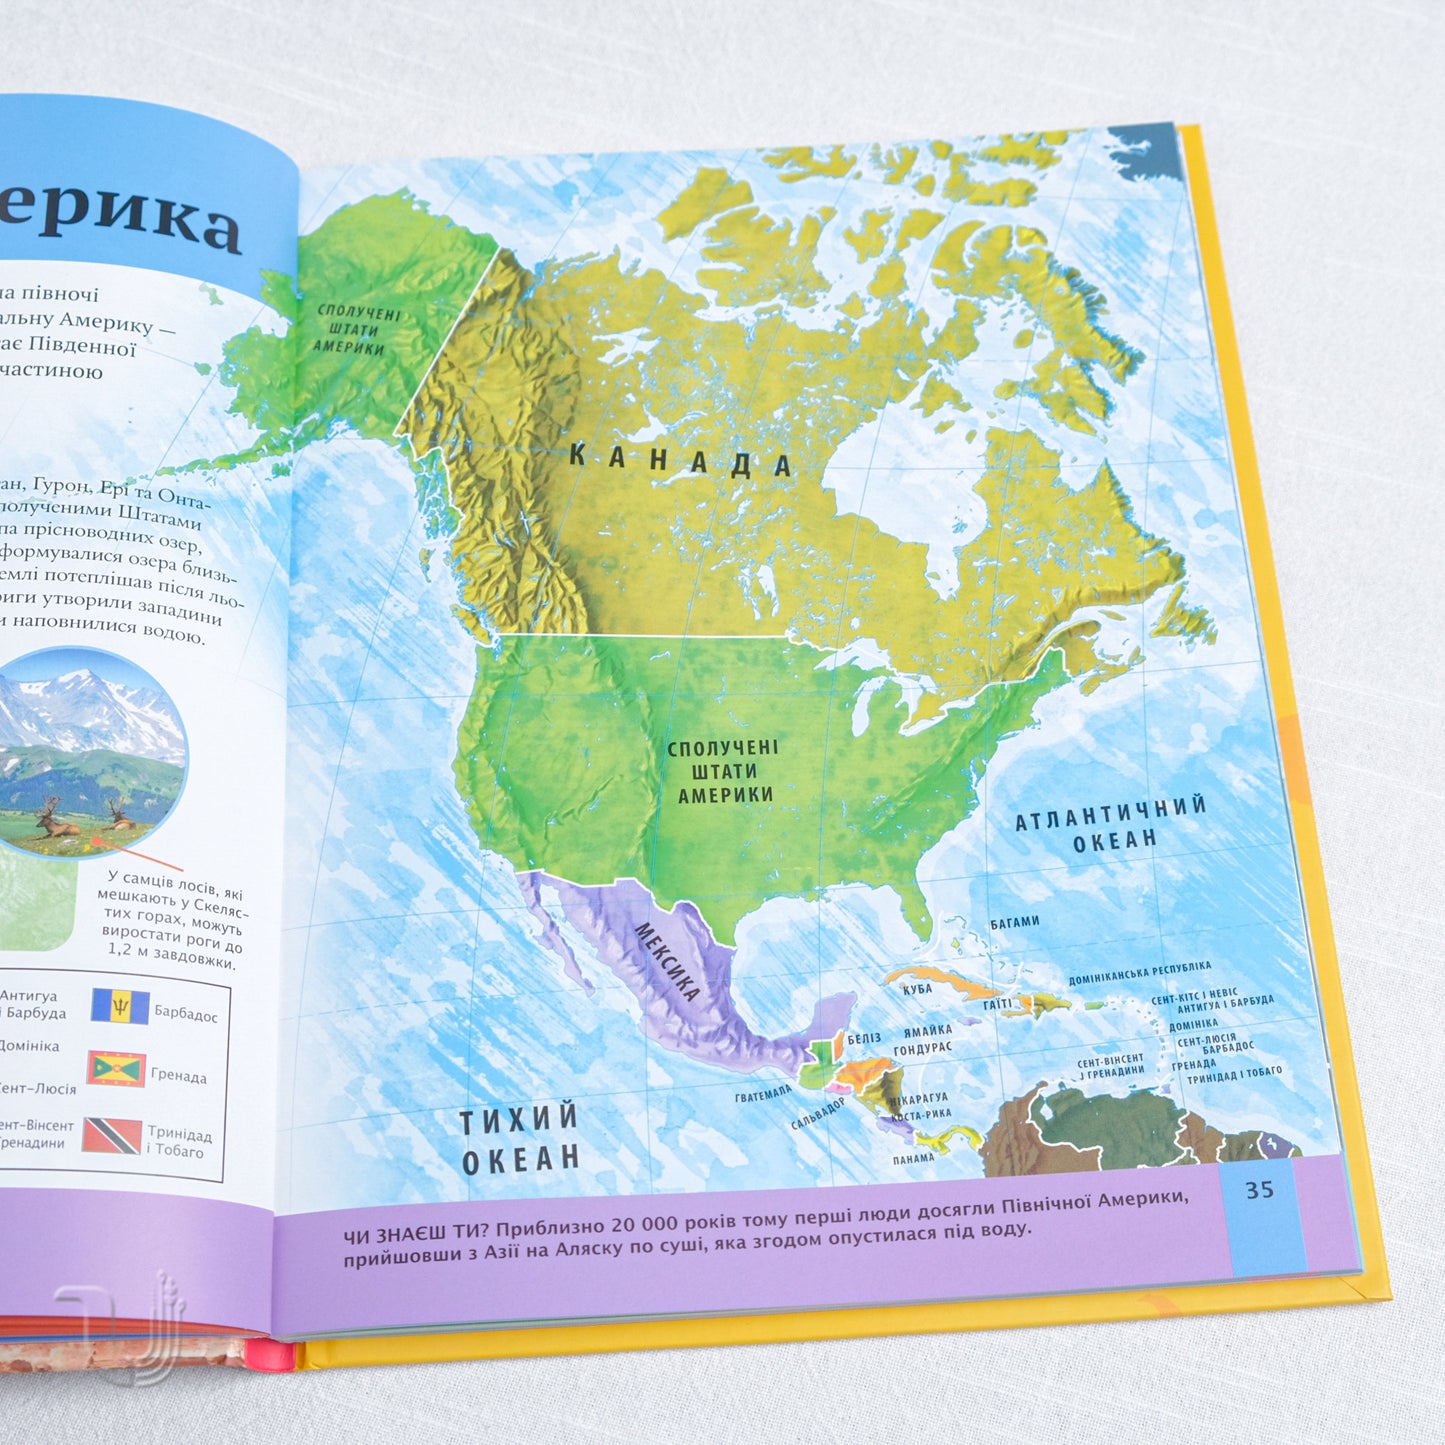 The Children's Atlas of the World